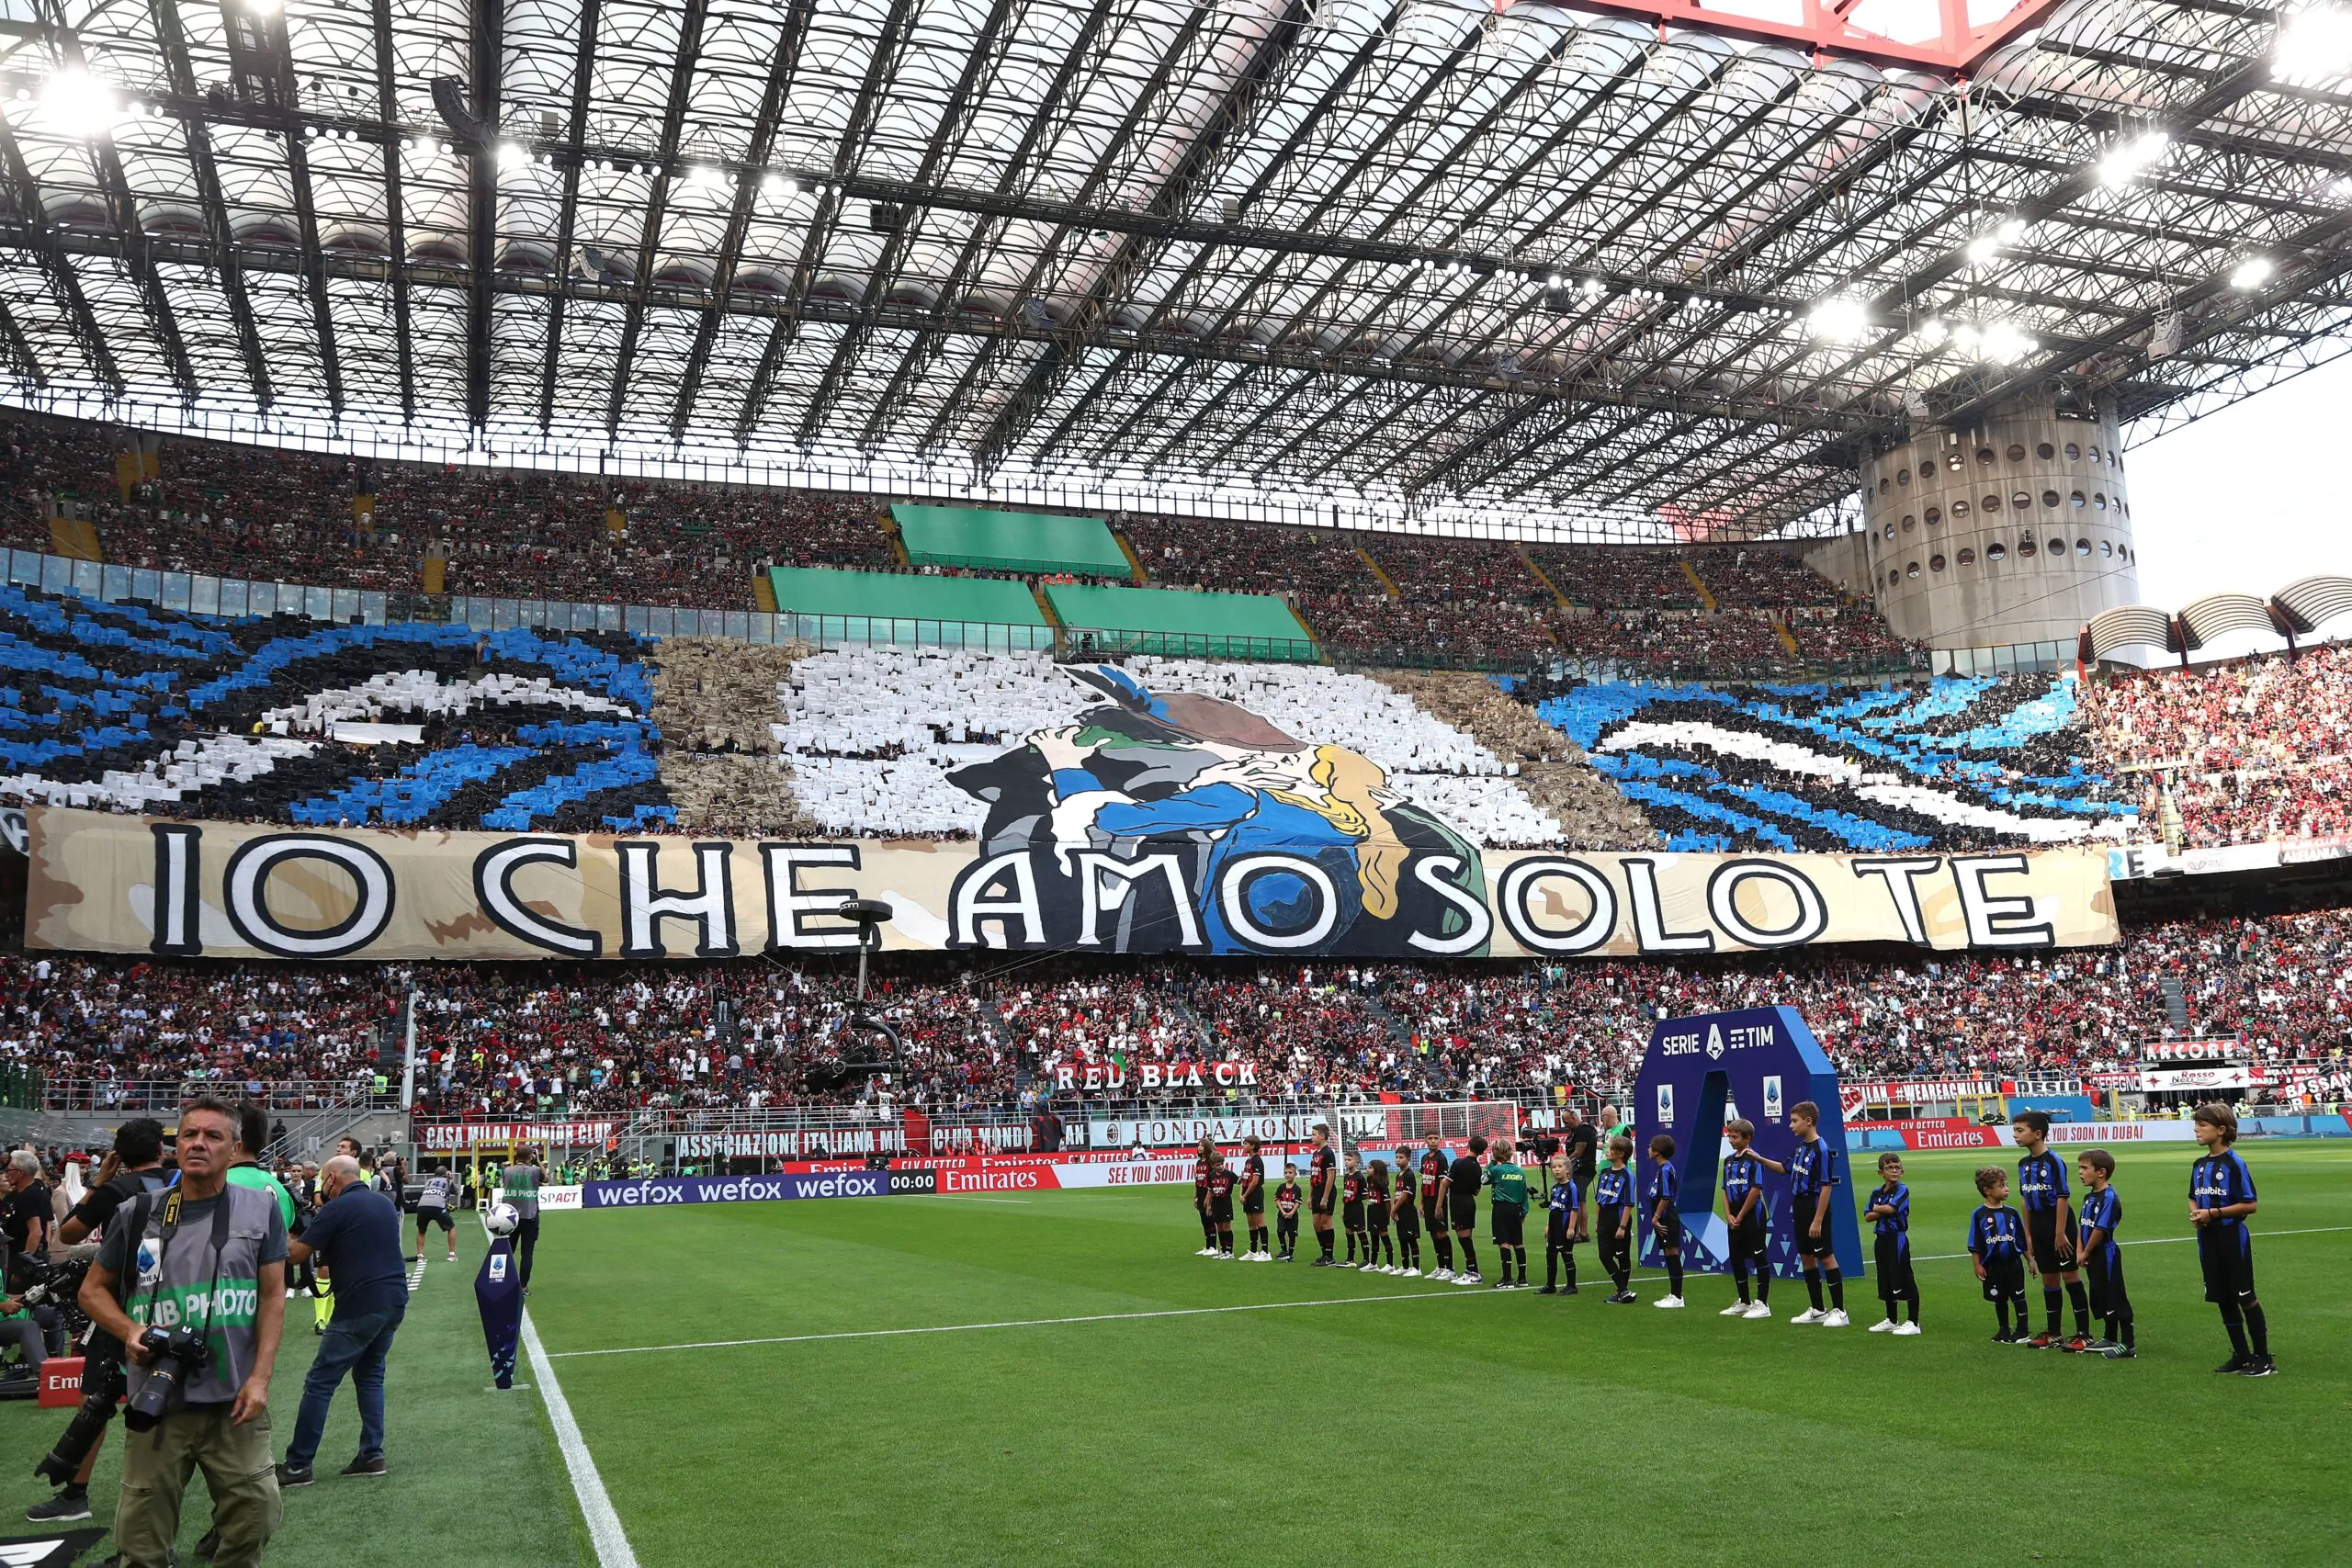 All-star game in Serie A: notizia incredibile sul campionato italiano!